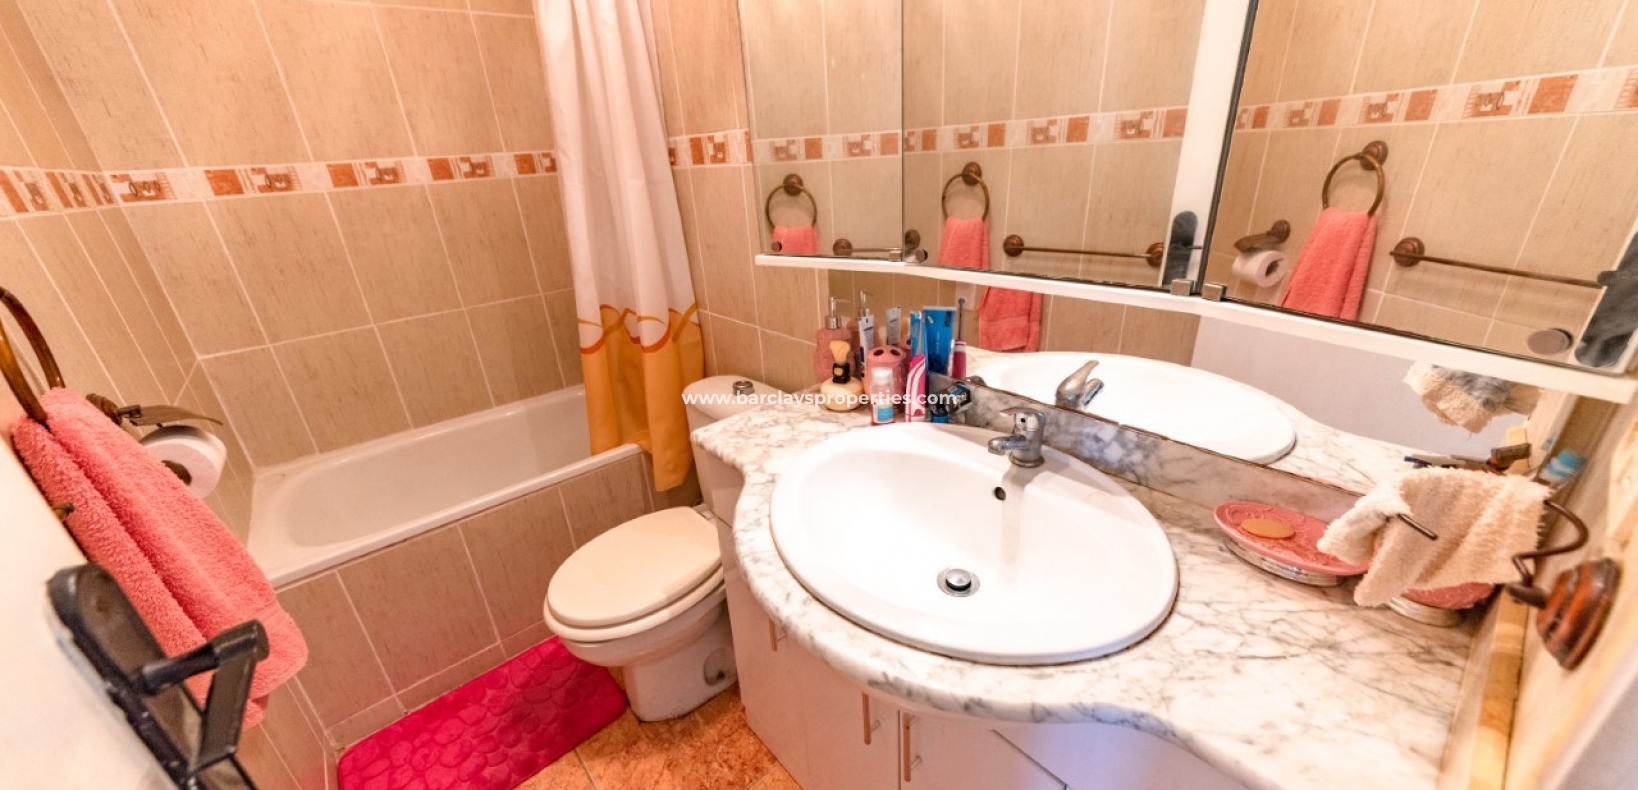 Badkamer-huis te koop in La Marina, Spanje met uitzicht op zee